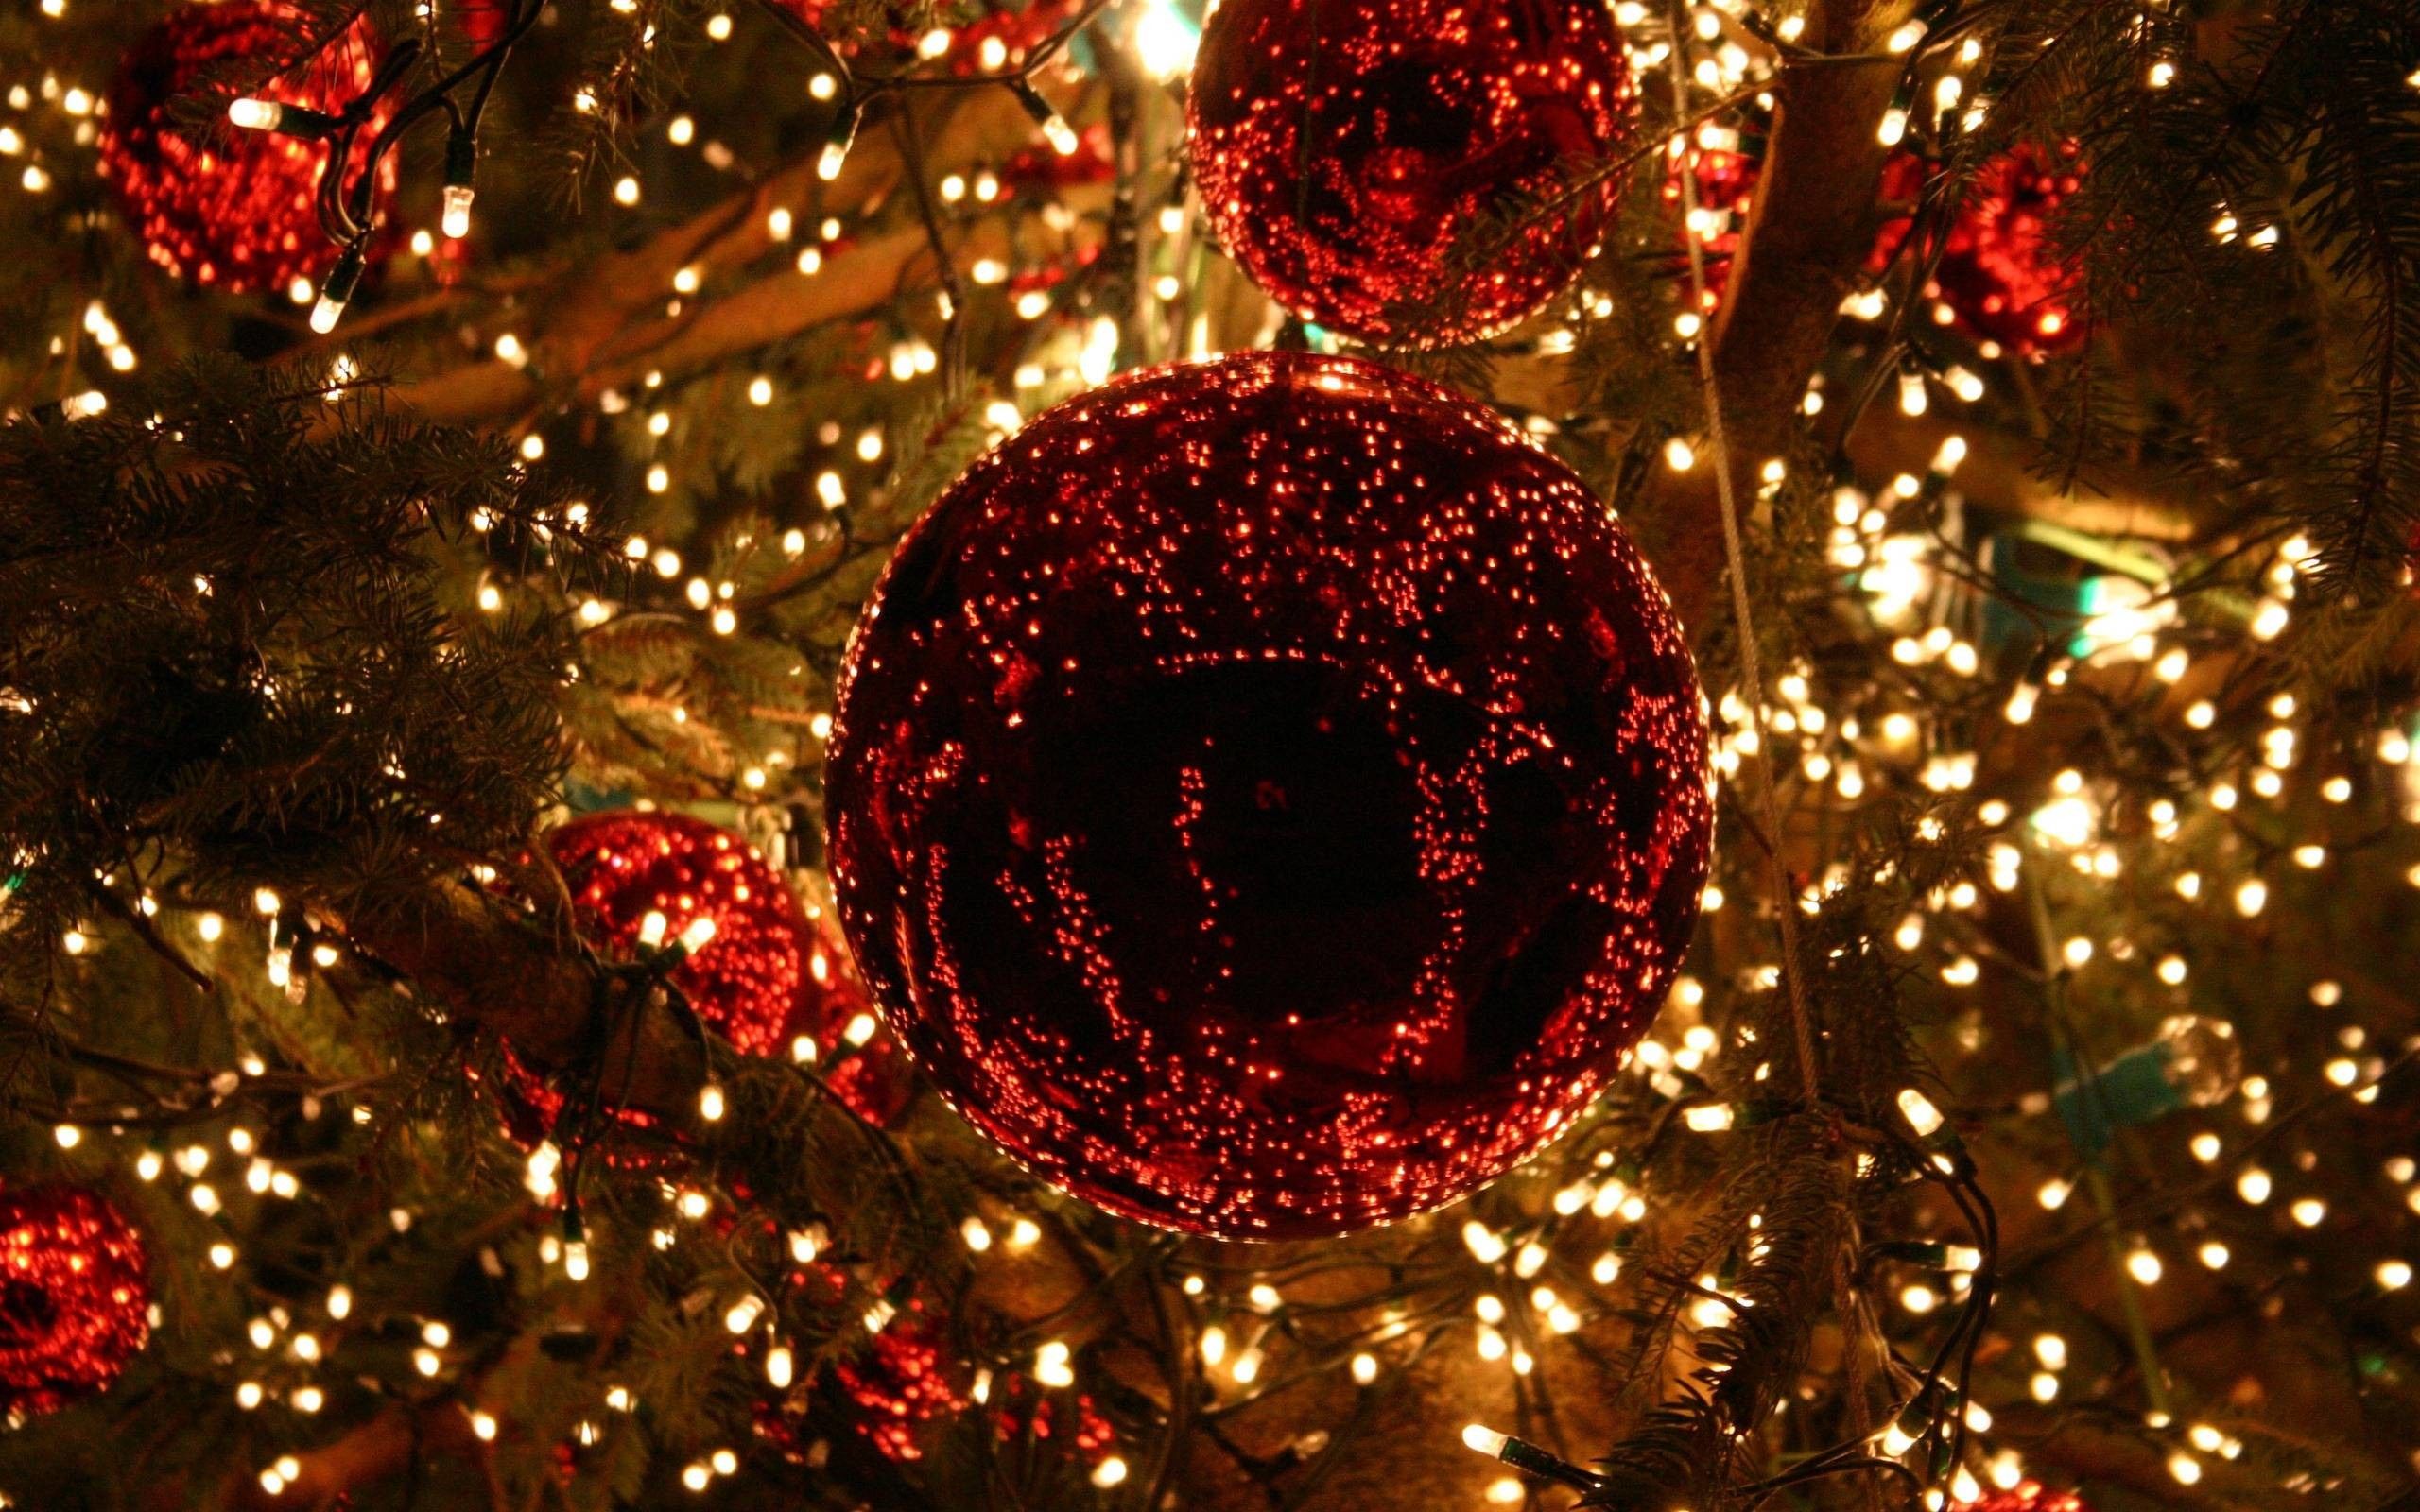 Những đèn Noel lung linh lấp lánh tràn ngập không gian đêm đón chào mùa lễ hội Noel sắp đến, hòa cùng âm nhạc và những món quà ngọt ngào làm cho không khí trở nên ấm áp và tuyệt vời hơn bao giờ hết.